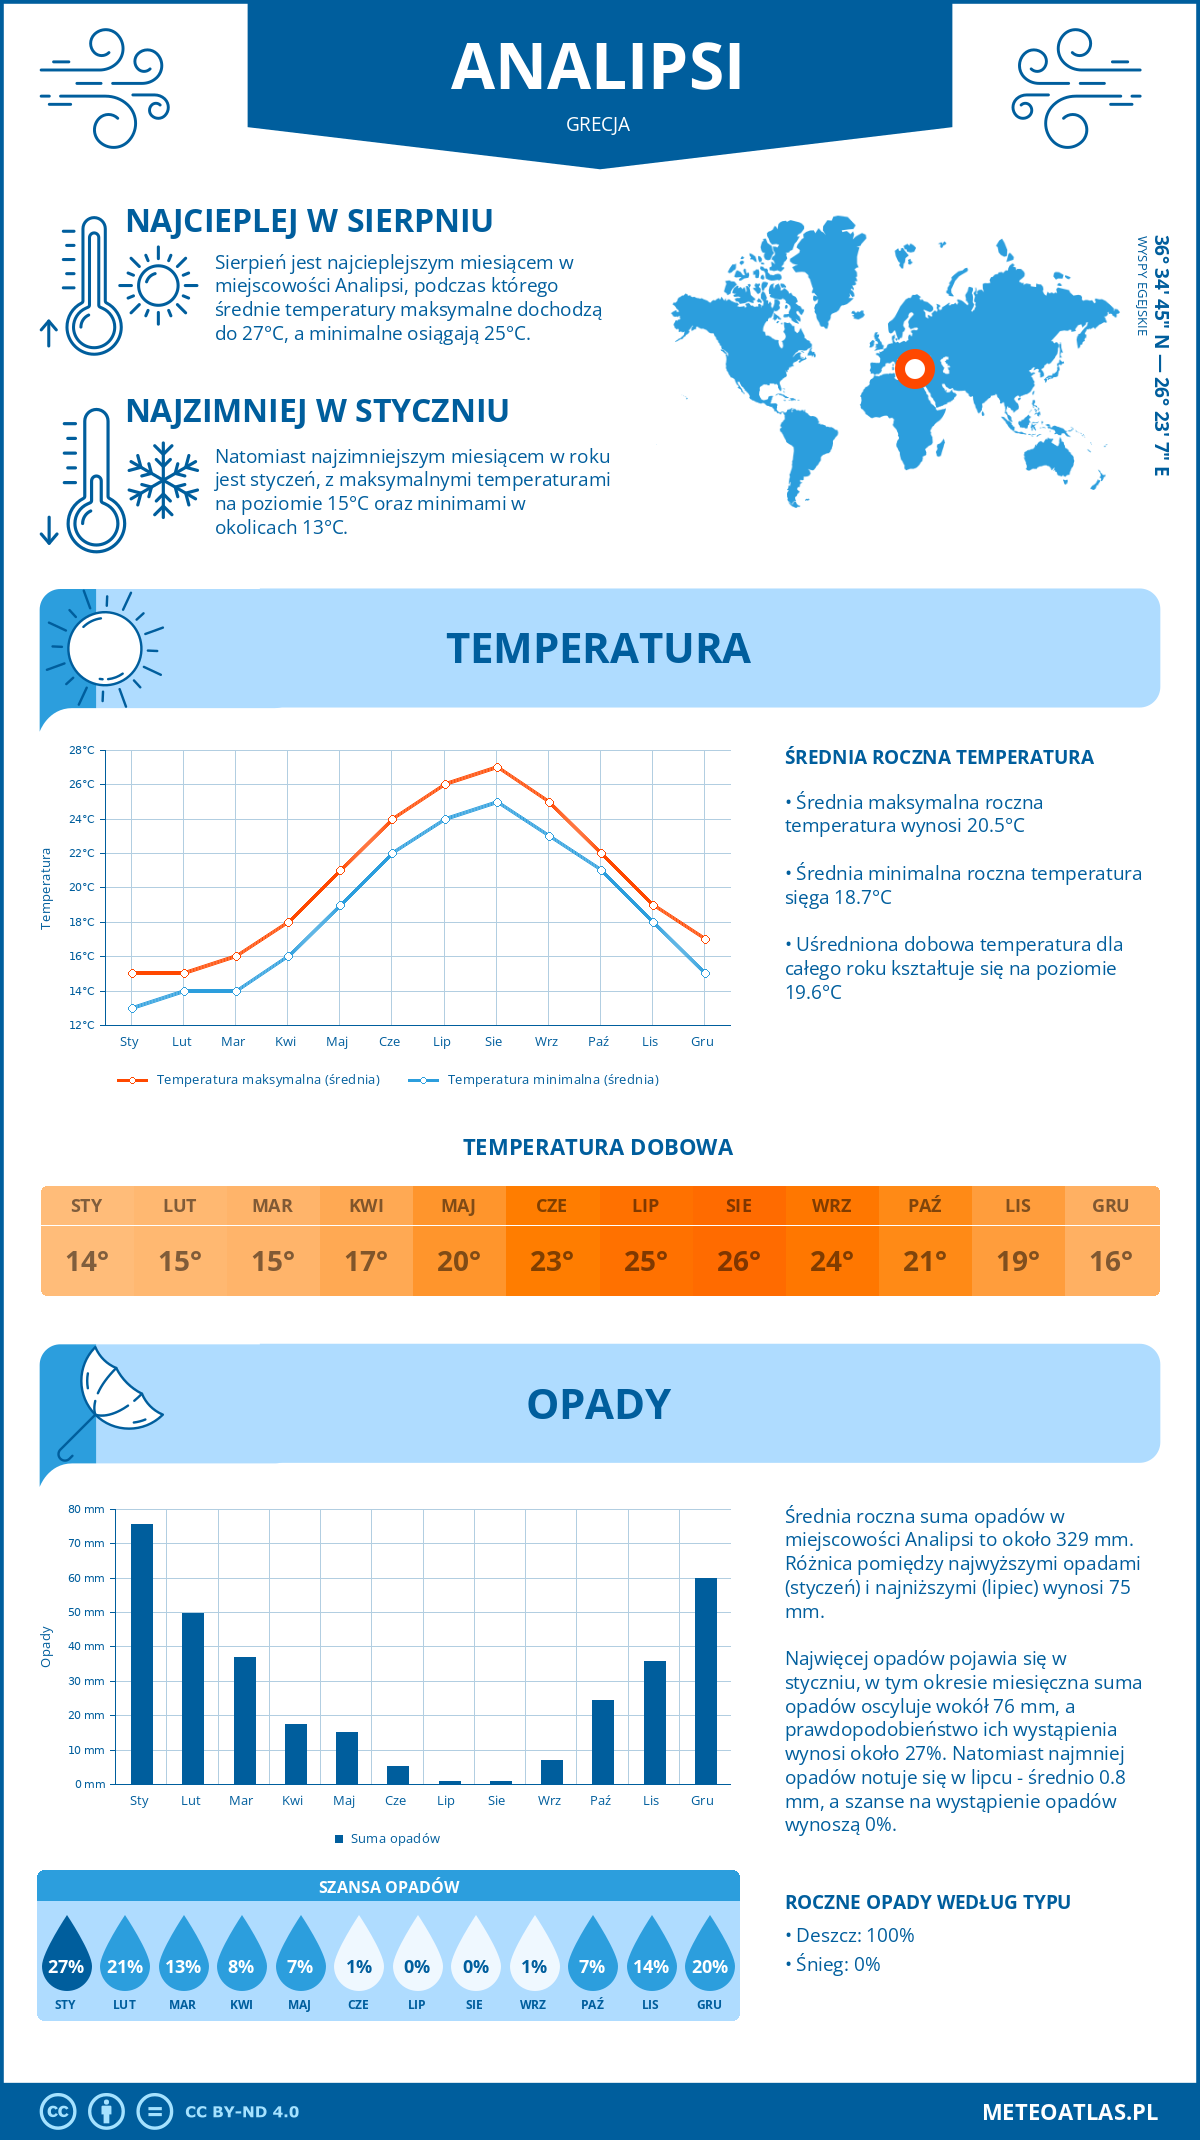 Pogoda Analipsi (Grecja). Temperatura oraz opady.